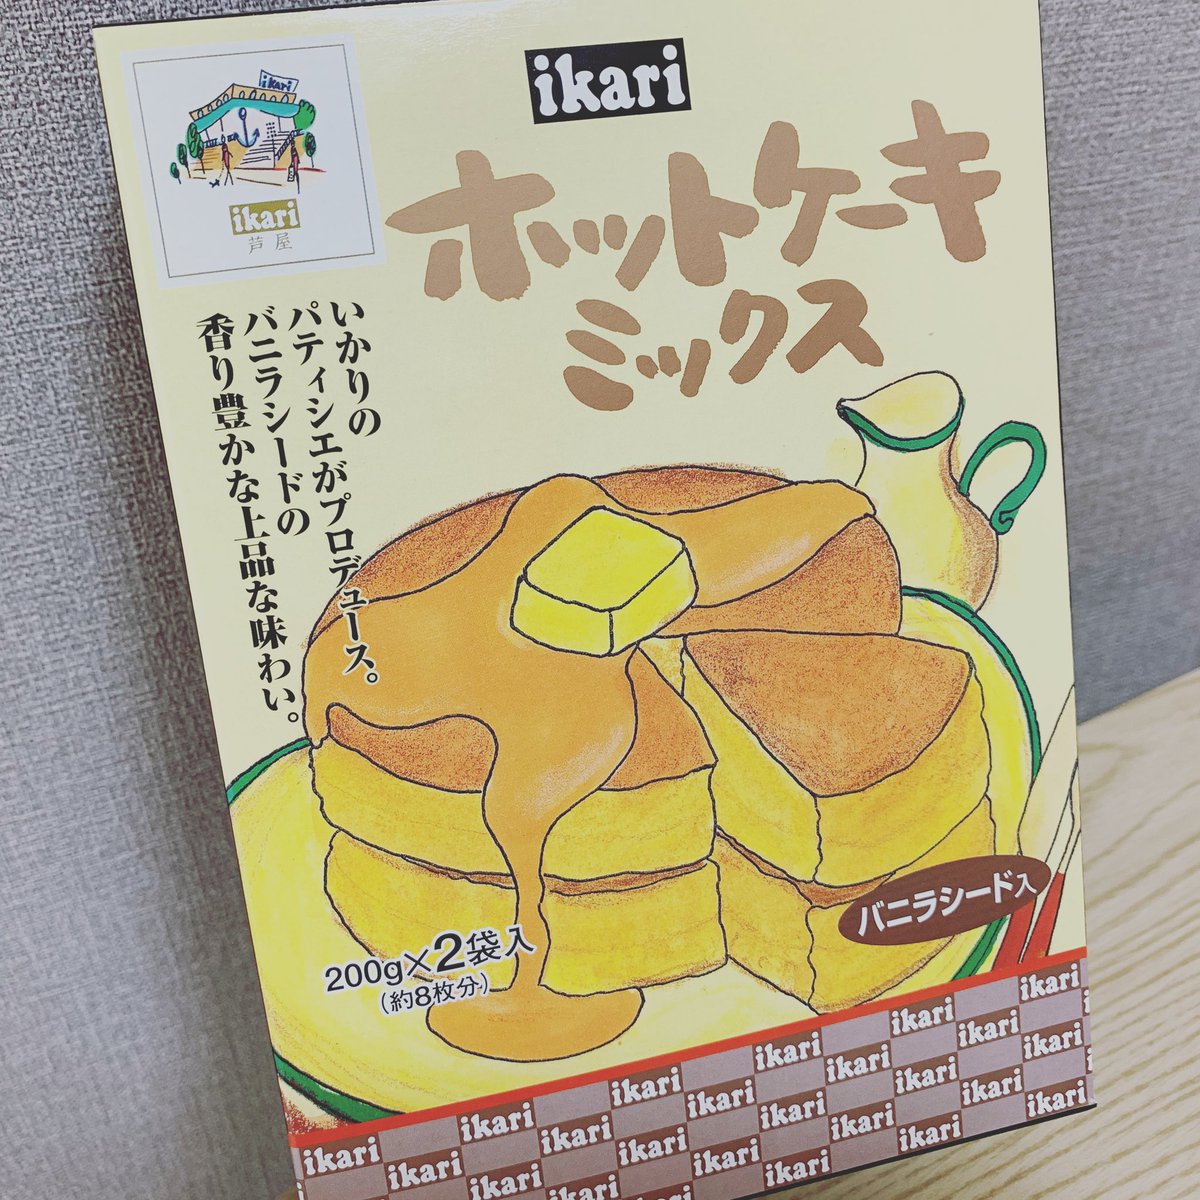 大阪心理セラピスト村田暁世 On Twitter 美味しー とのおすすめで買ってみましたん イカリのホットケーキミックス 久しぶりにホットケーキ作ったー 美味しかった 今日は杏仁豆腐も作ったお 牛乳をね 使いきりたいのです Ww 残りはホワイトソースだな